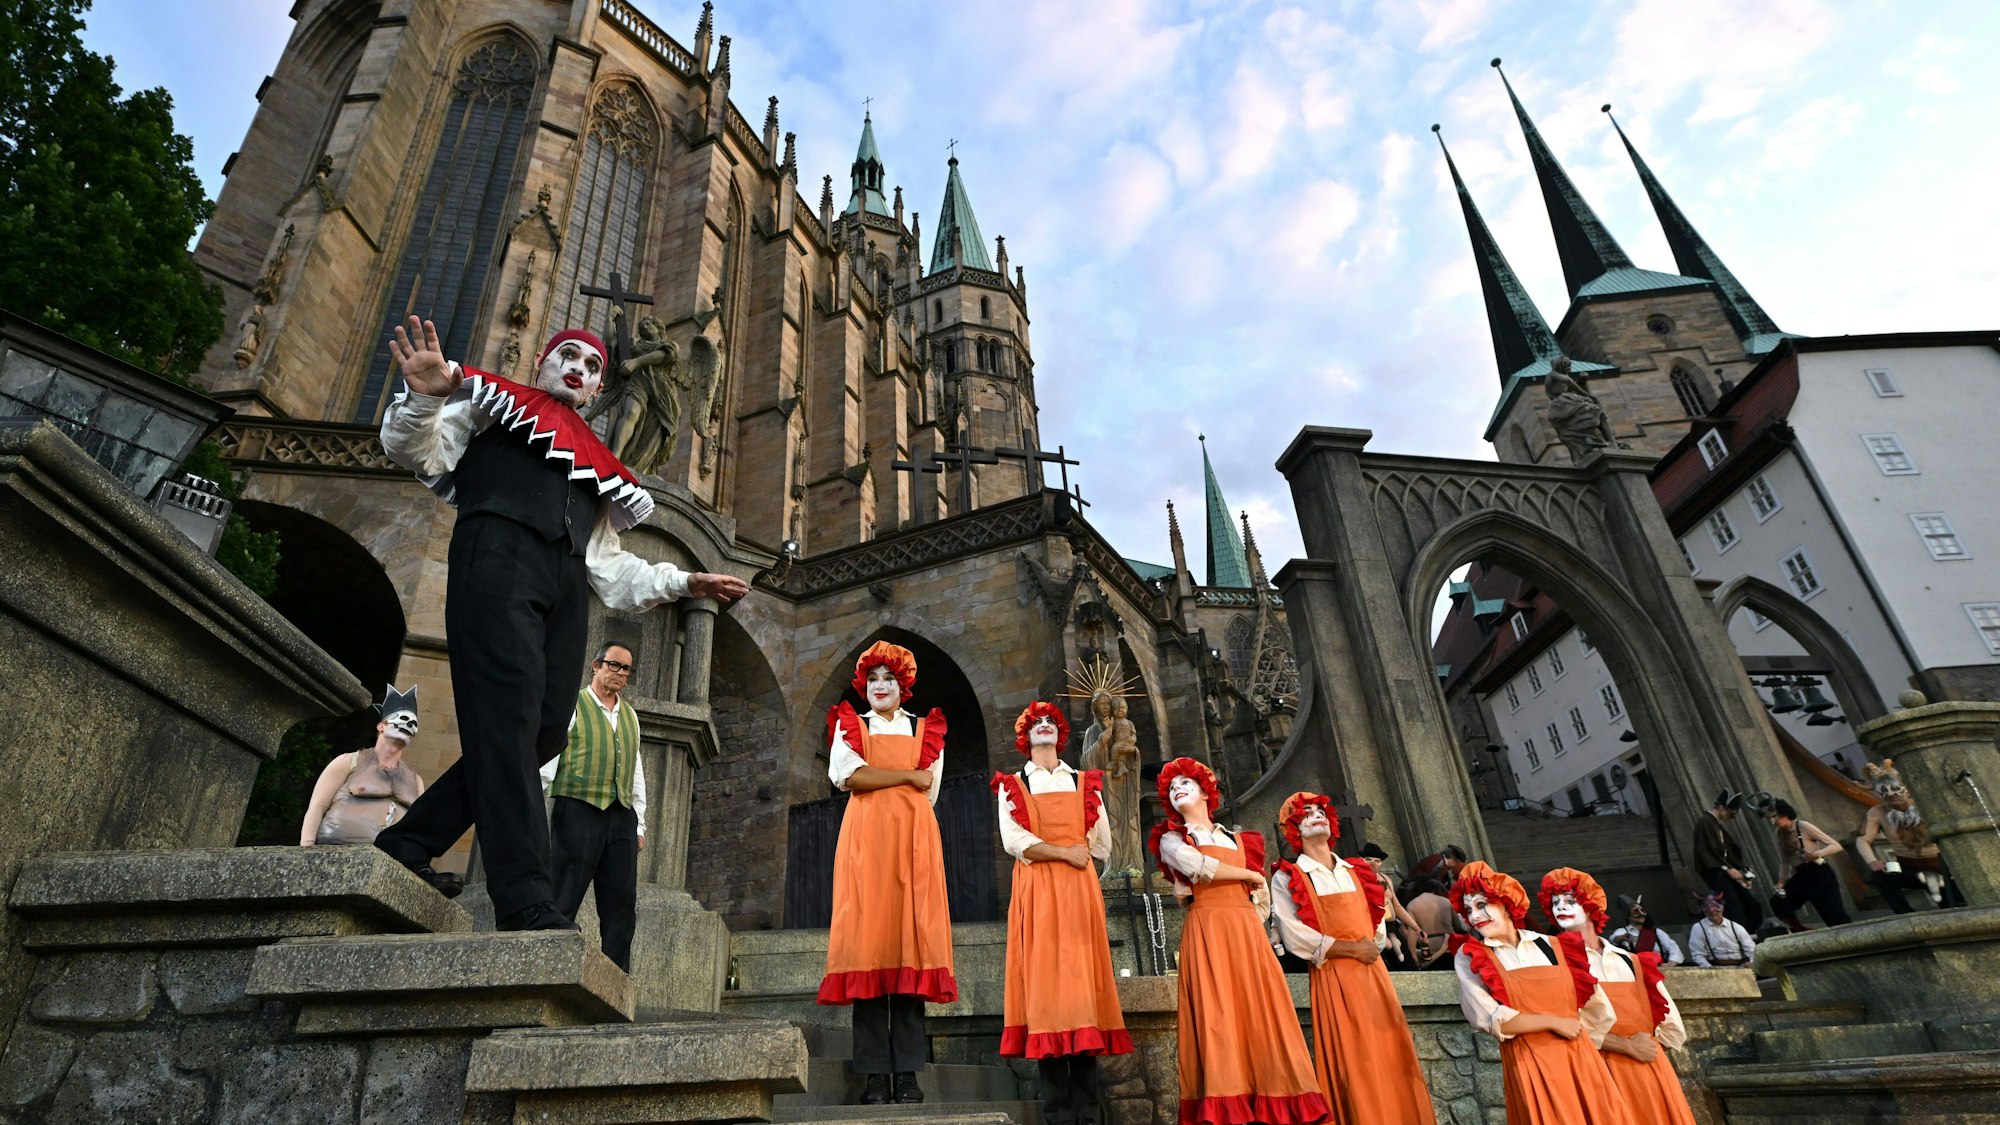 Solisten und Chor proben eine Szene der Oper ·Fausts Verdammnis· von Hector Berlioz für die Domstufen-Festspiele in Erfurt vor der Kulisse des Mariendoms und St. Severi.